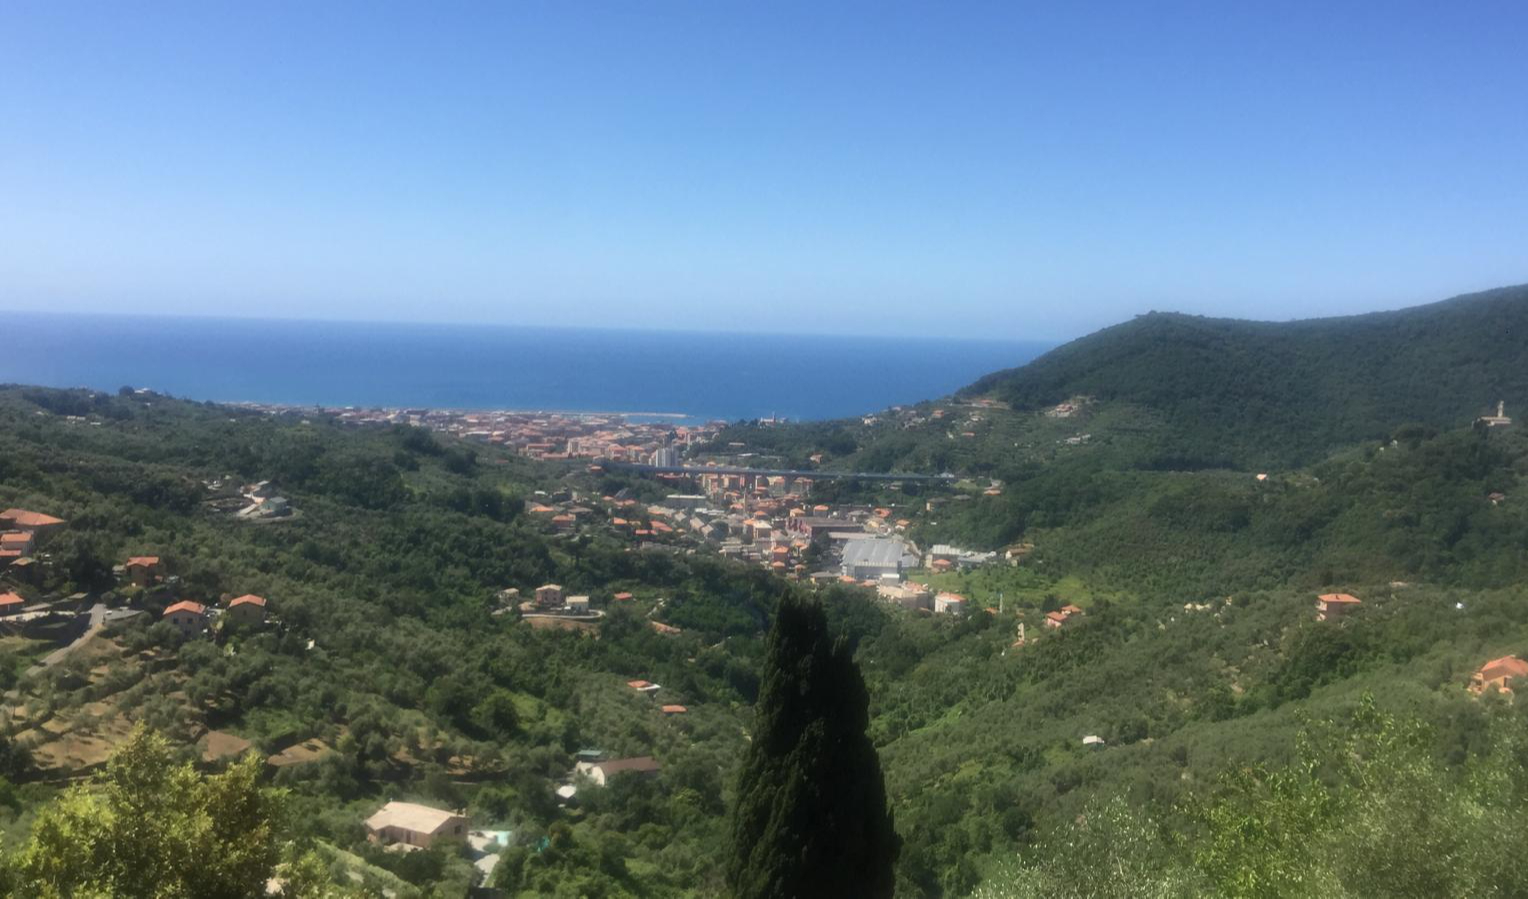 Meteo in Liguria, domina l'alta pressione: sole su tutta la regione